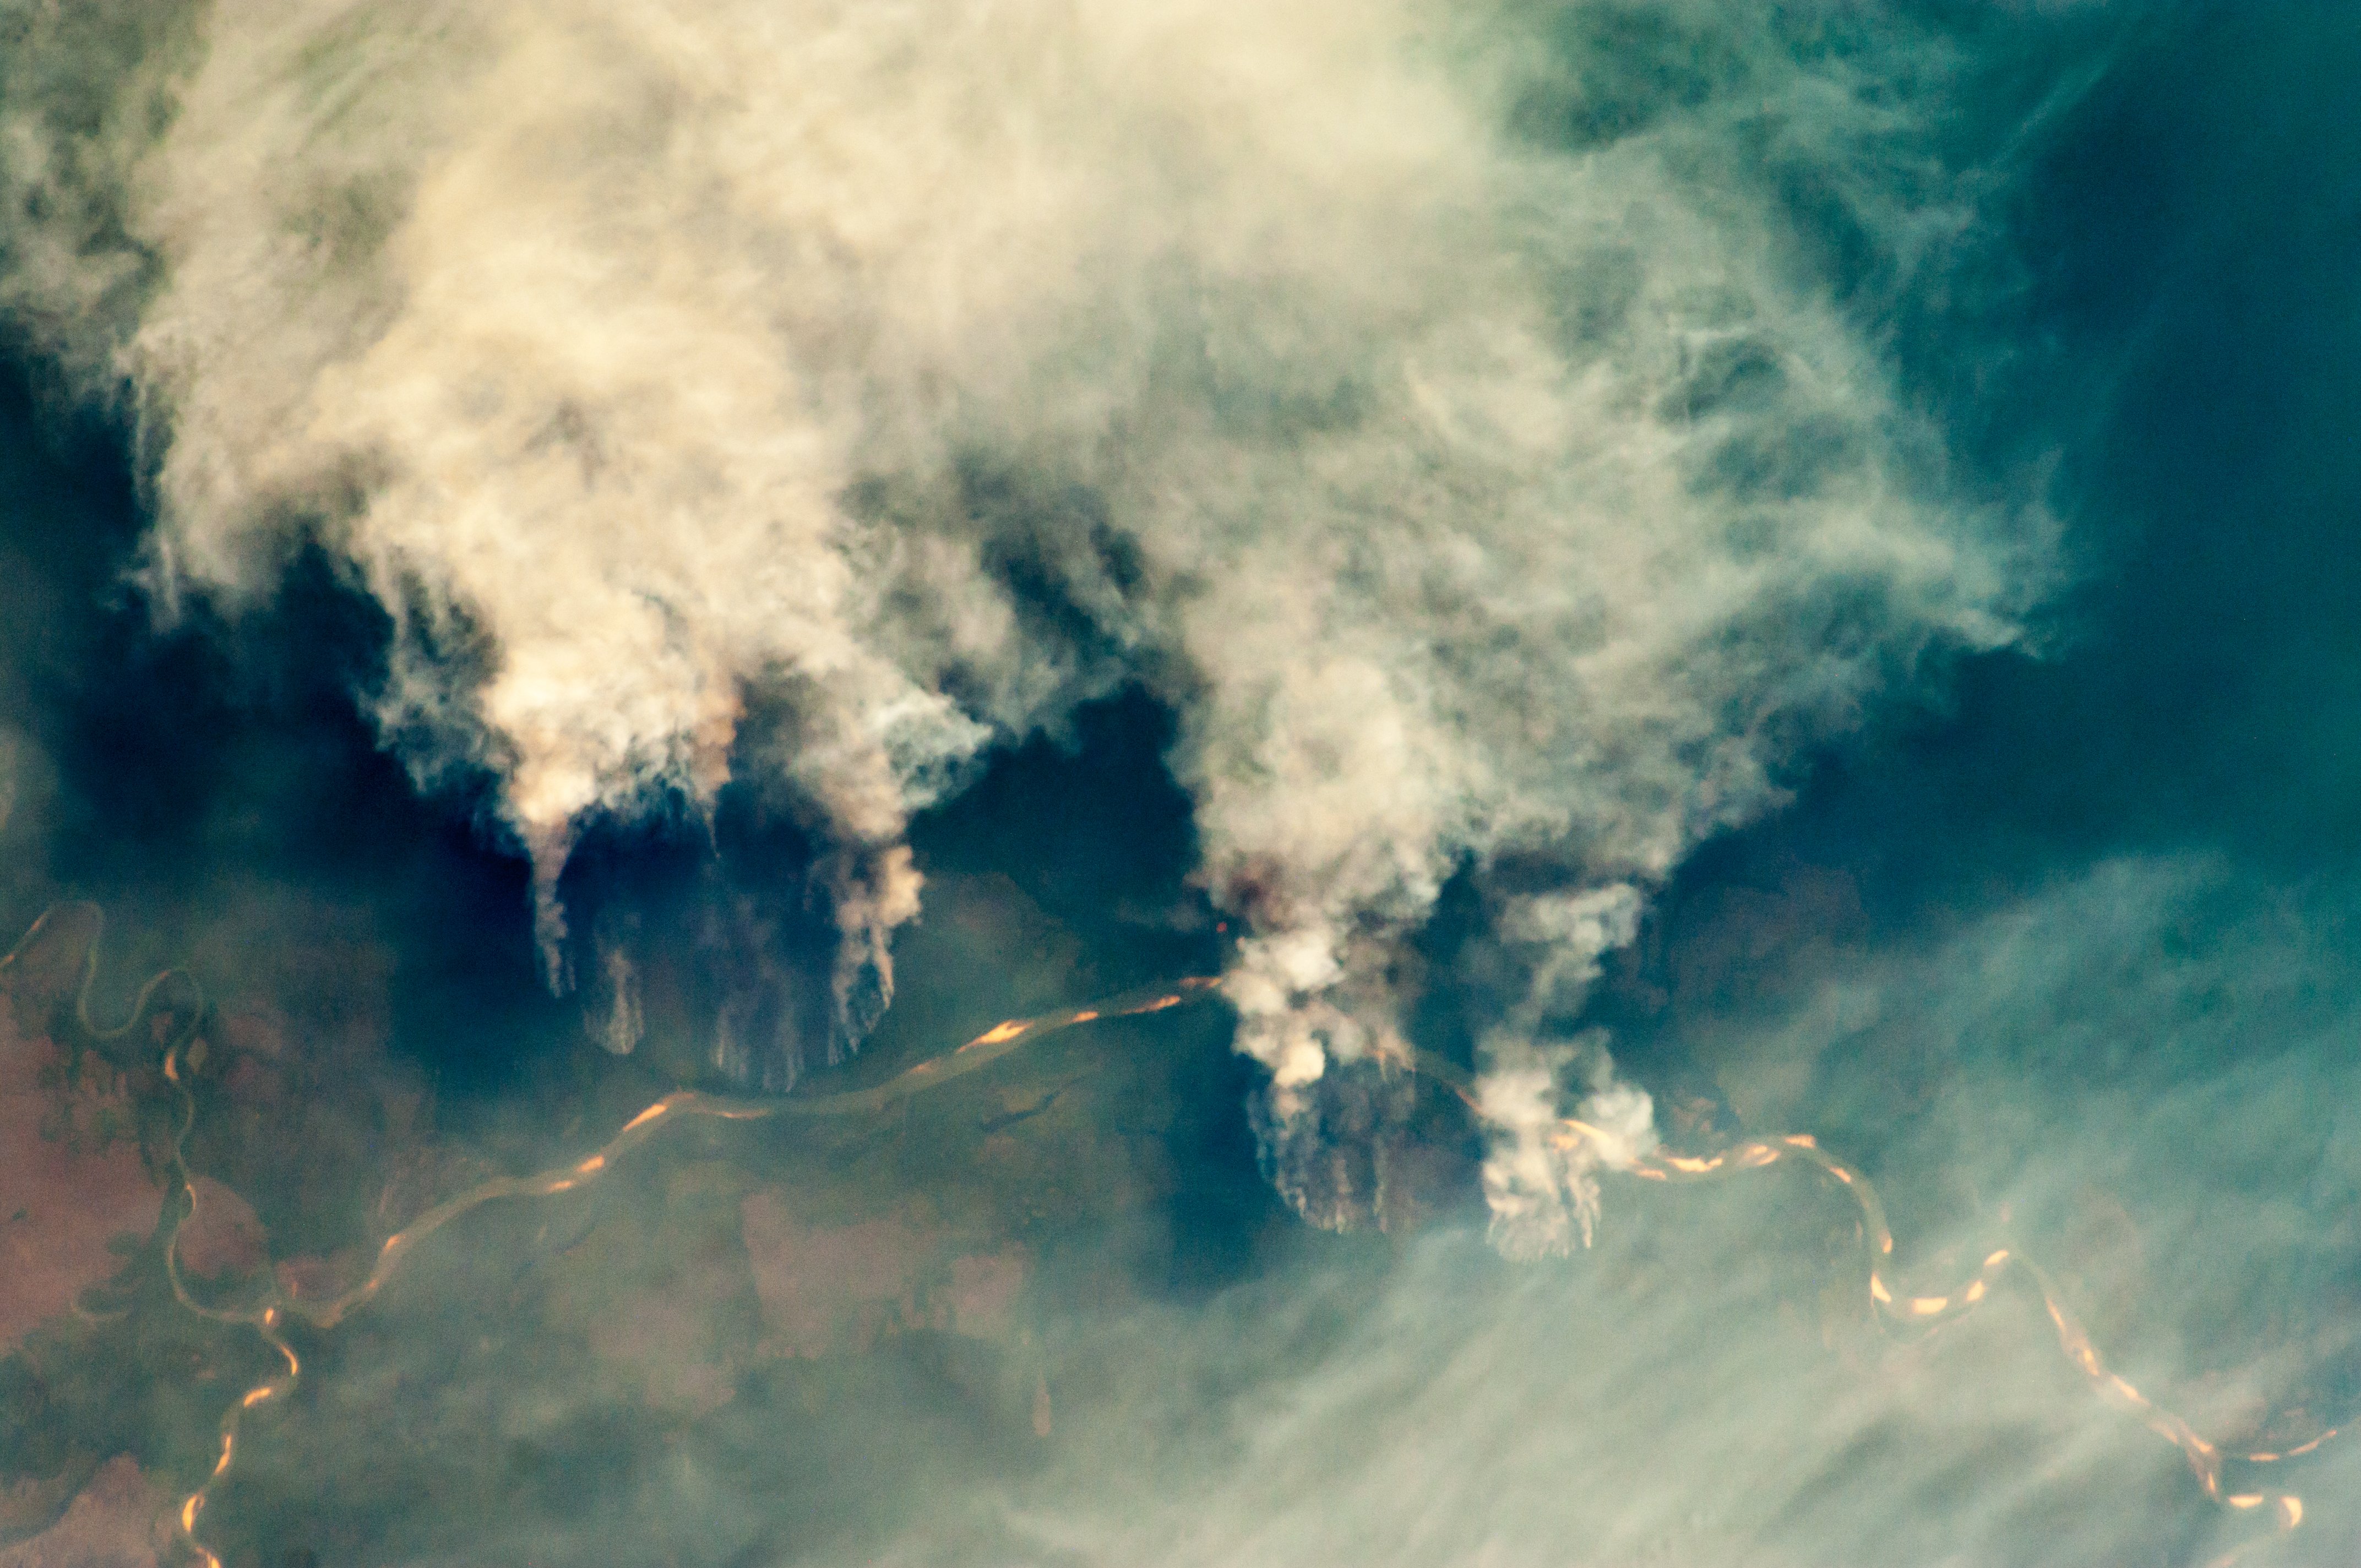 Incendis forestals a la vora del riu Xingu, Brasil, 2011 (NASA)